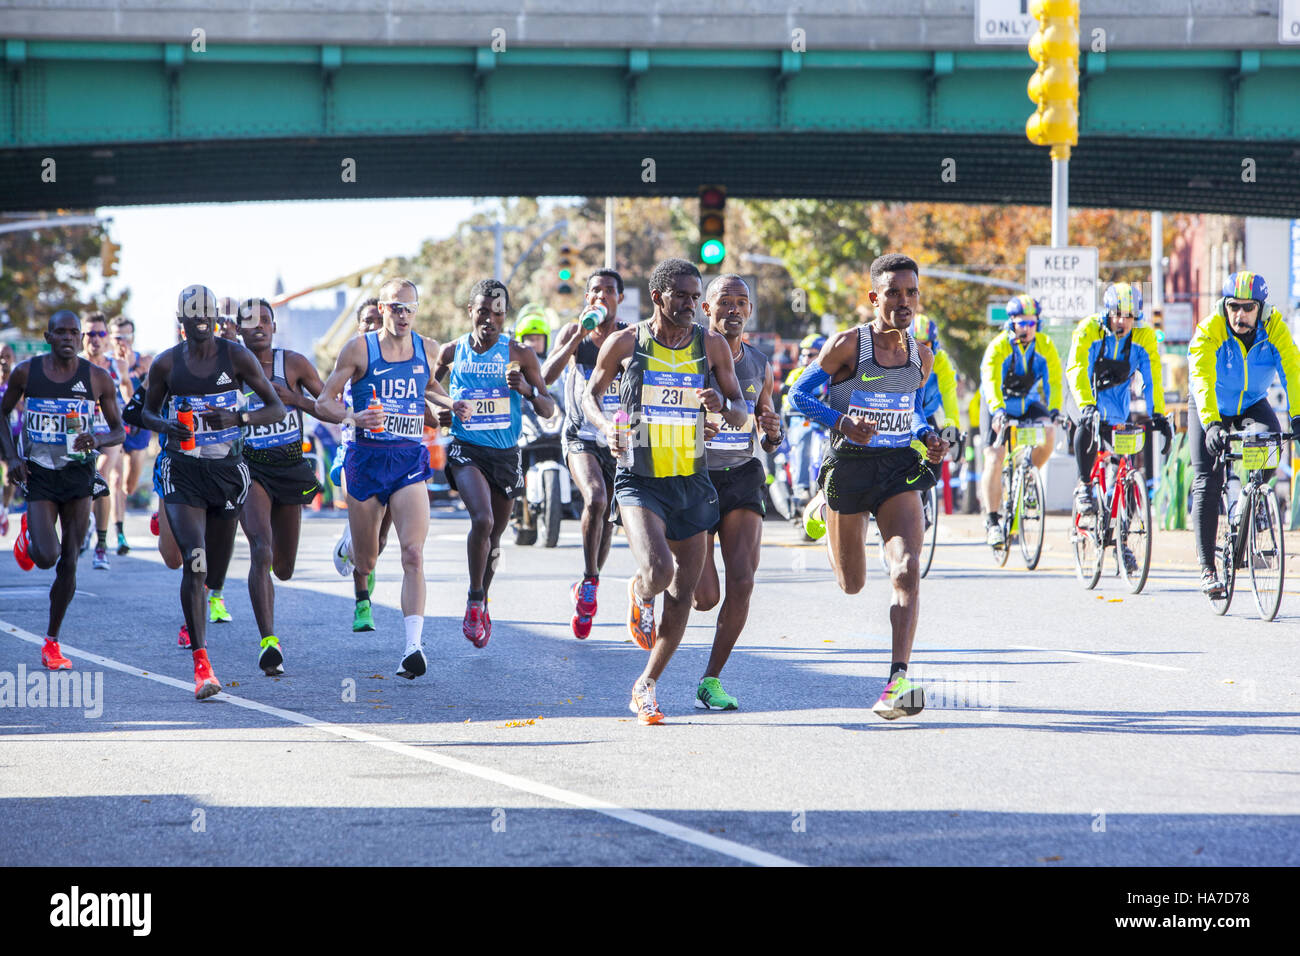 Coureurs homme avant le long de la 4e Avenue à Brooklyn au cours de la New York City Marathon. Avant droit, l'Érythrée Ghirmay Ghebreslassie, 19 ans a remporté le TCS 2016 New York City Marathon dans le domaine des hommes. Banque D'Images